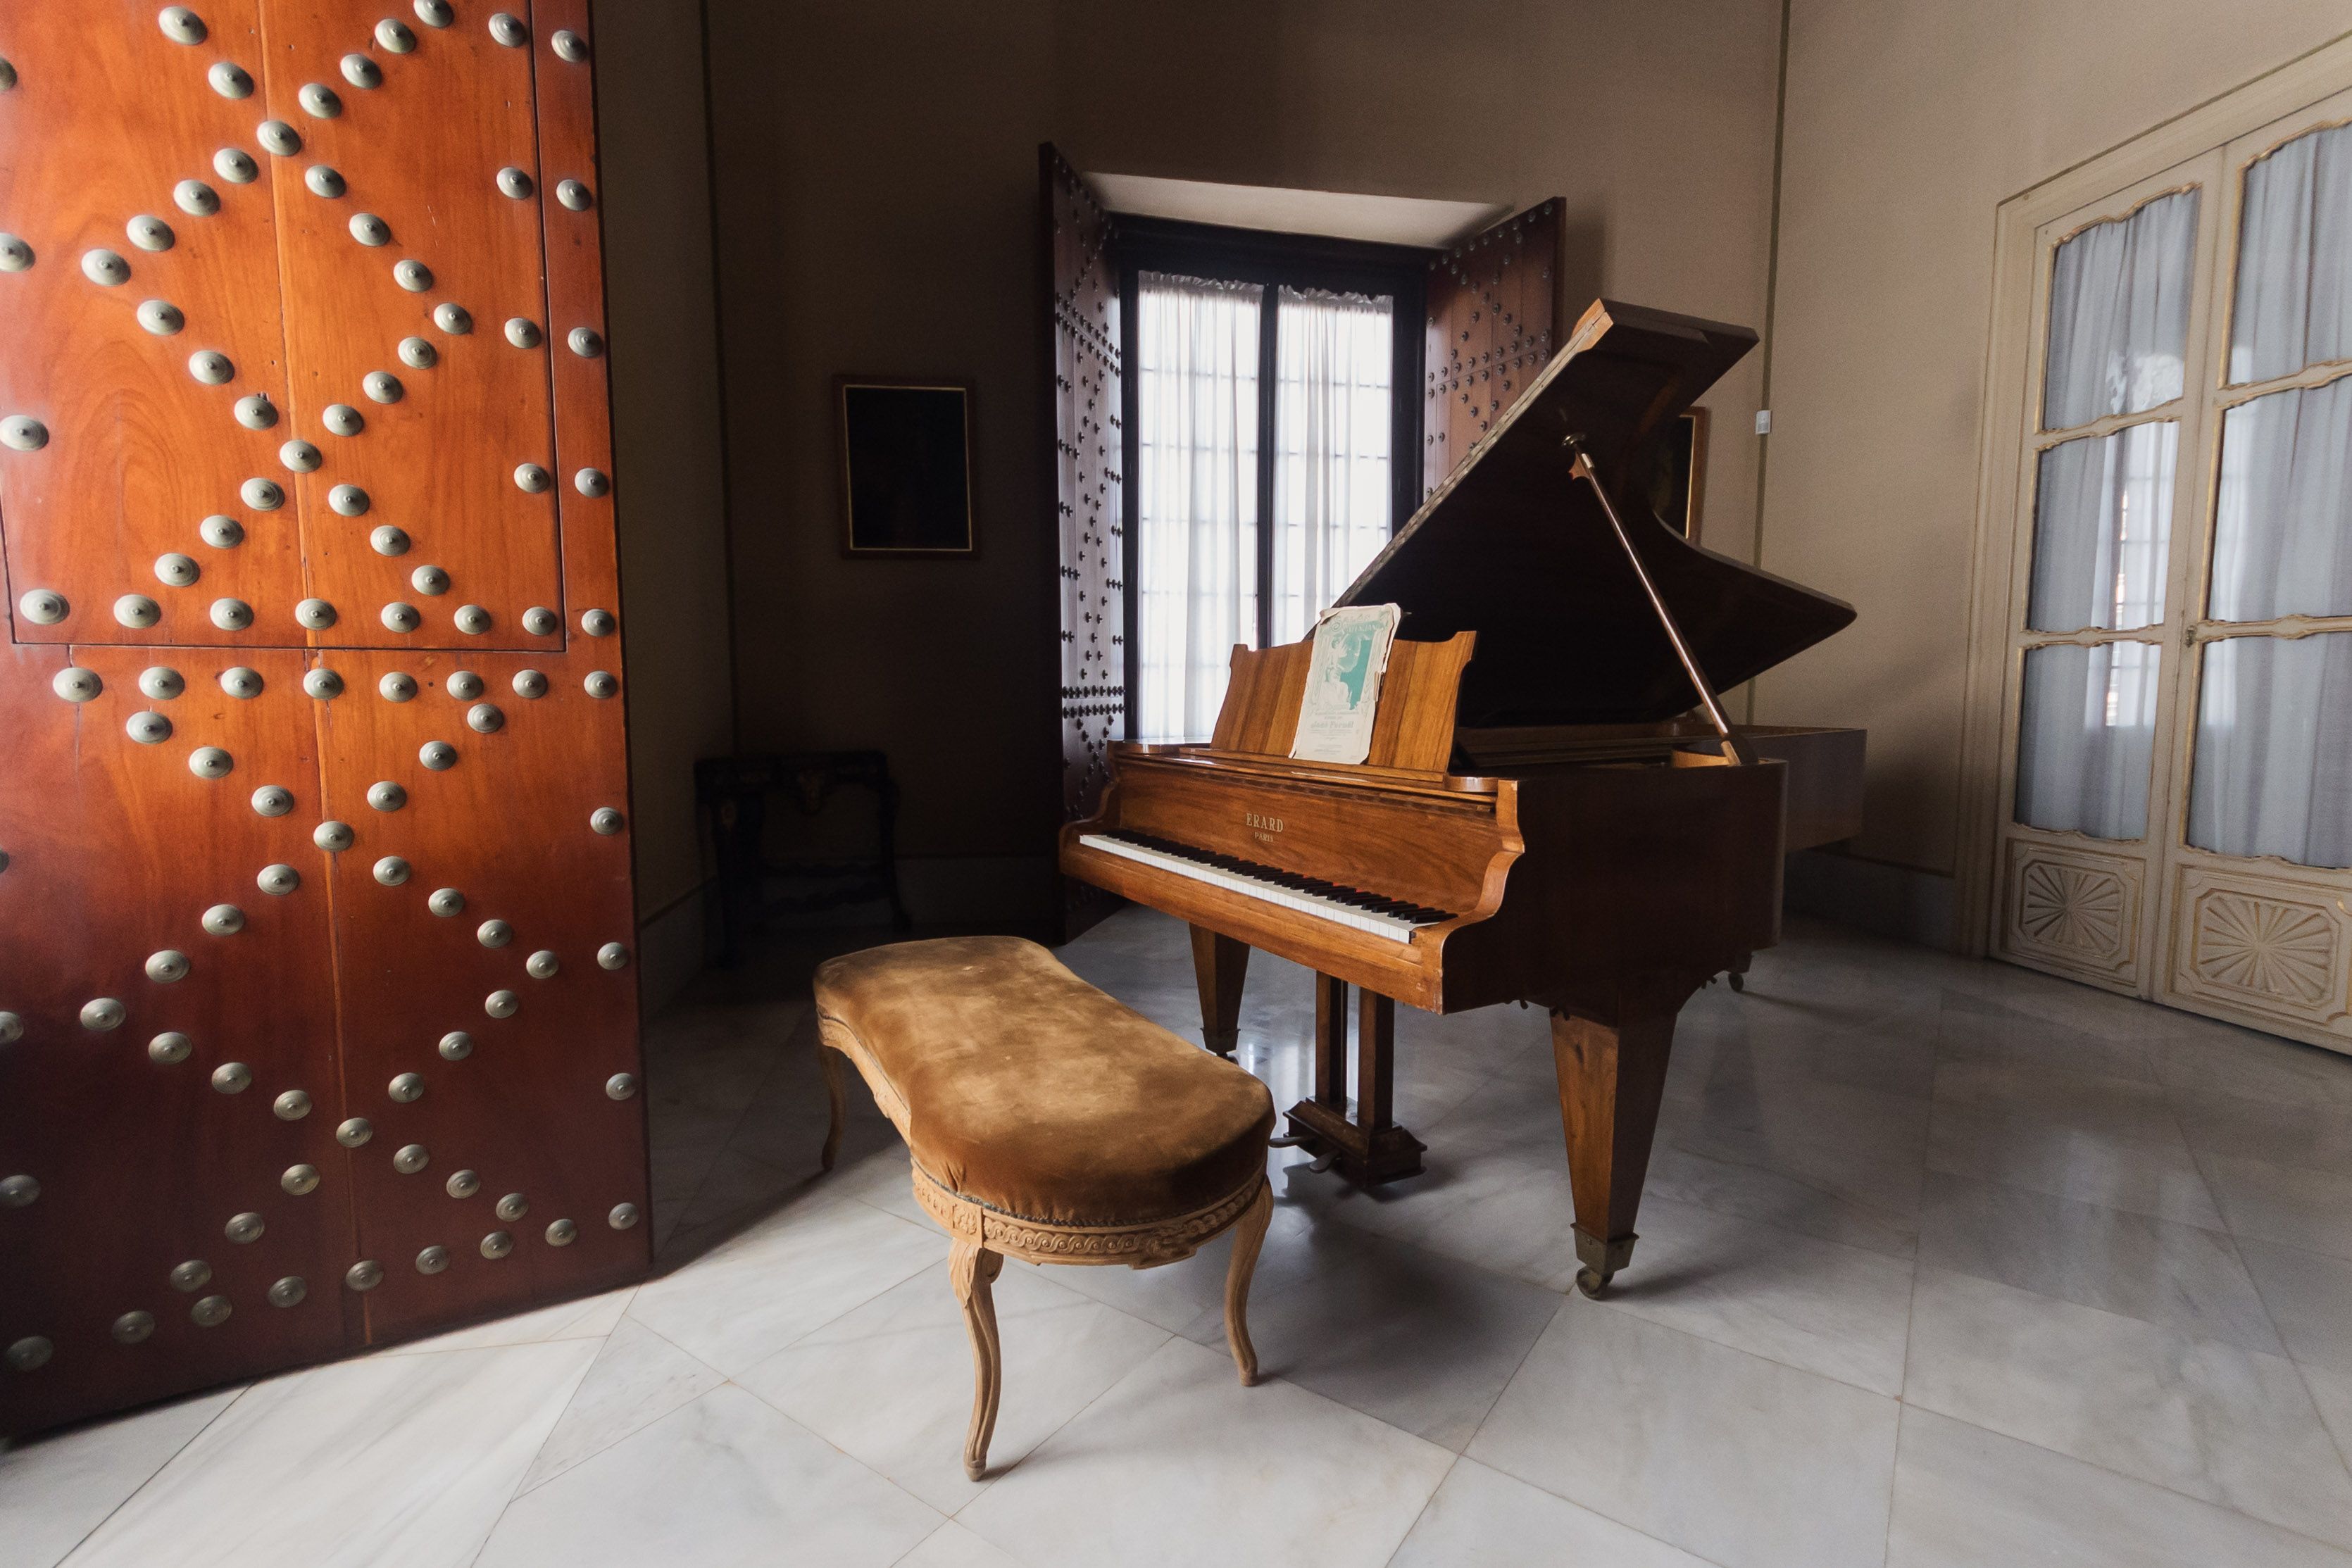 El famoso piano de cola situado en el salón de baile, que ha ganado varios premios.    MANU GARCÍA